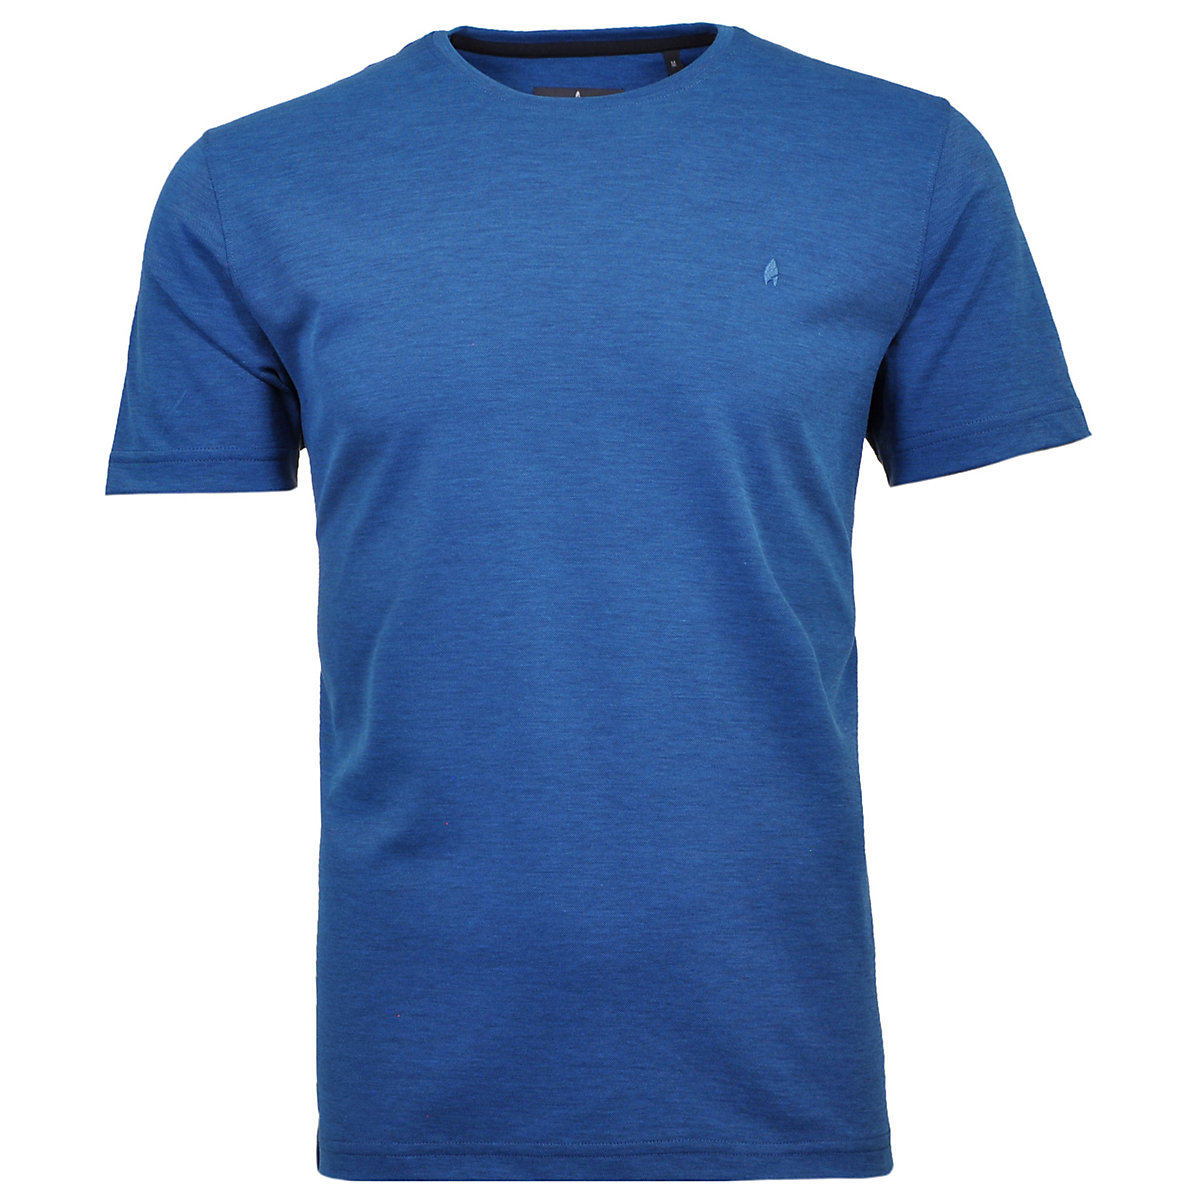 RAGMAN Softknit T-Shirt modern fit T-Shirts blau